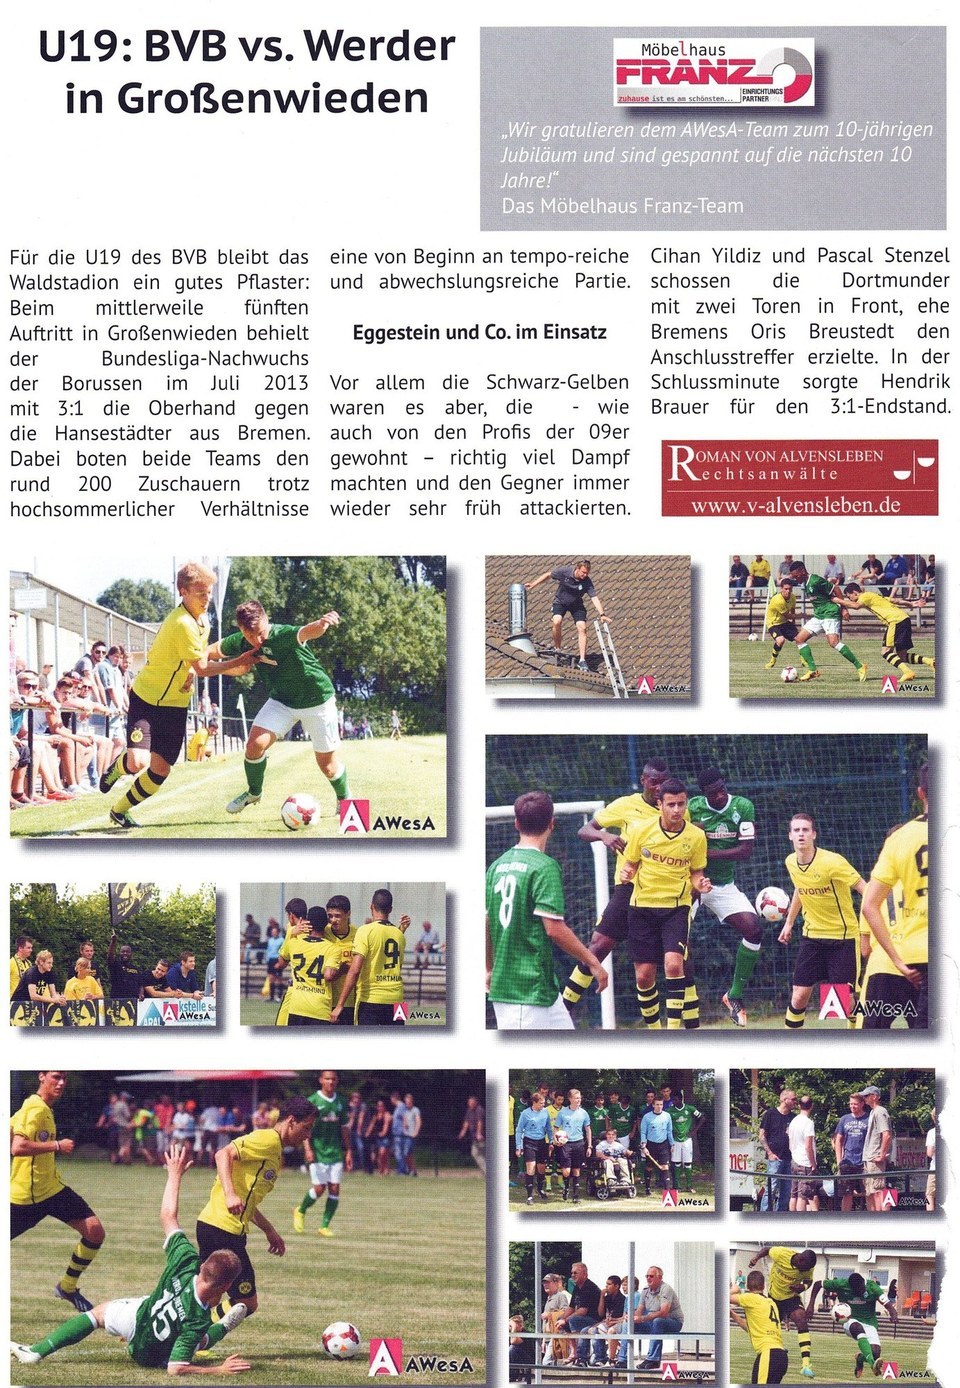 U19 Dortmund Werder Bremen in Grossenwieden